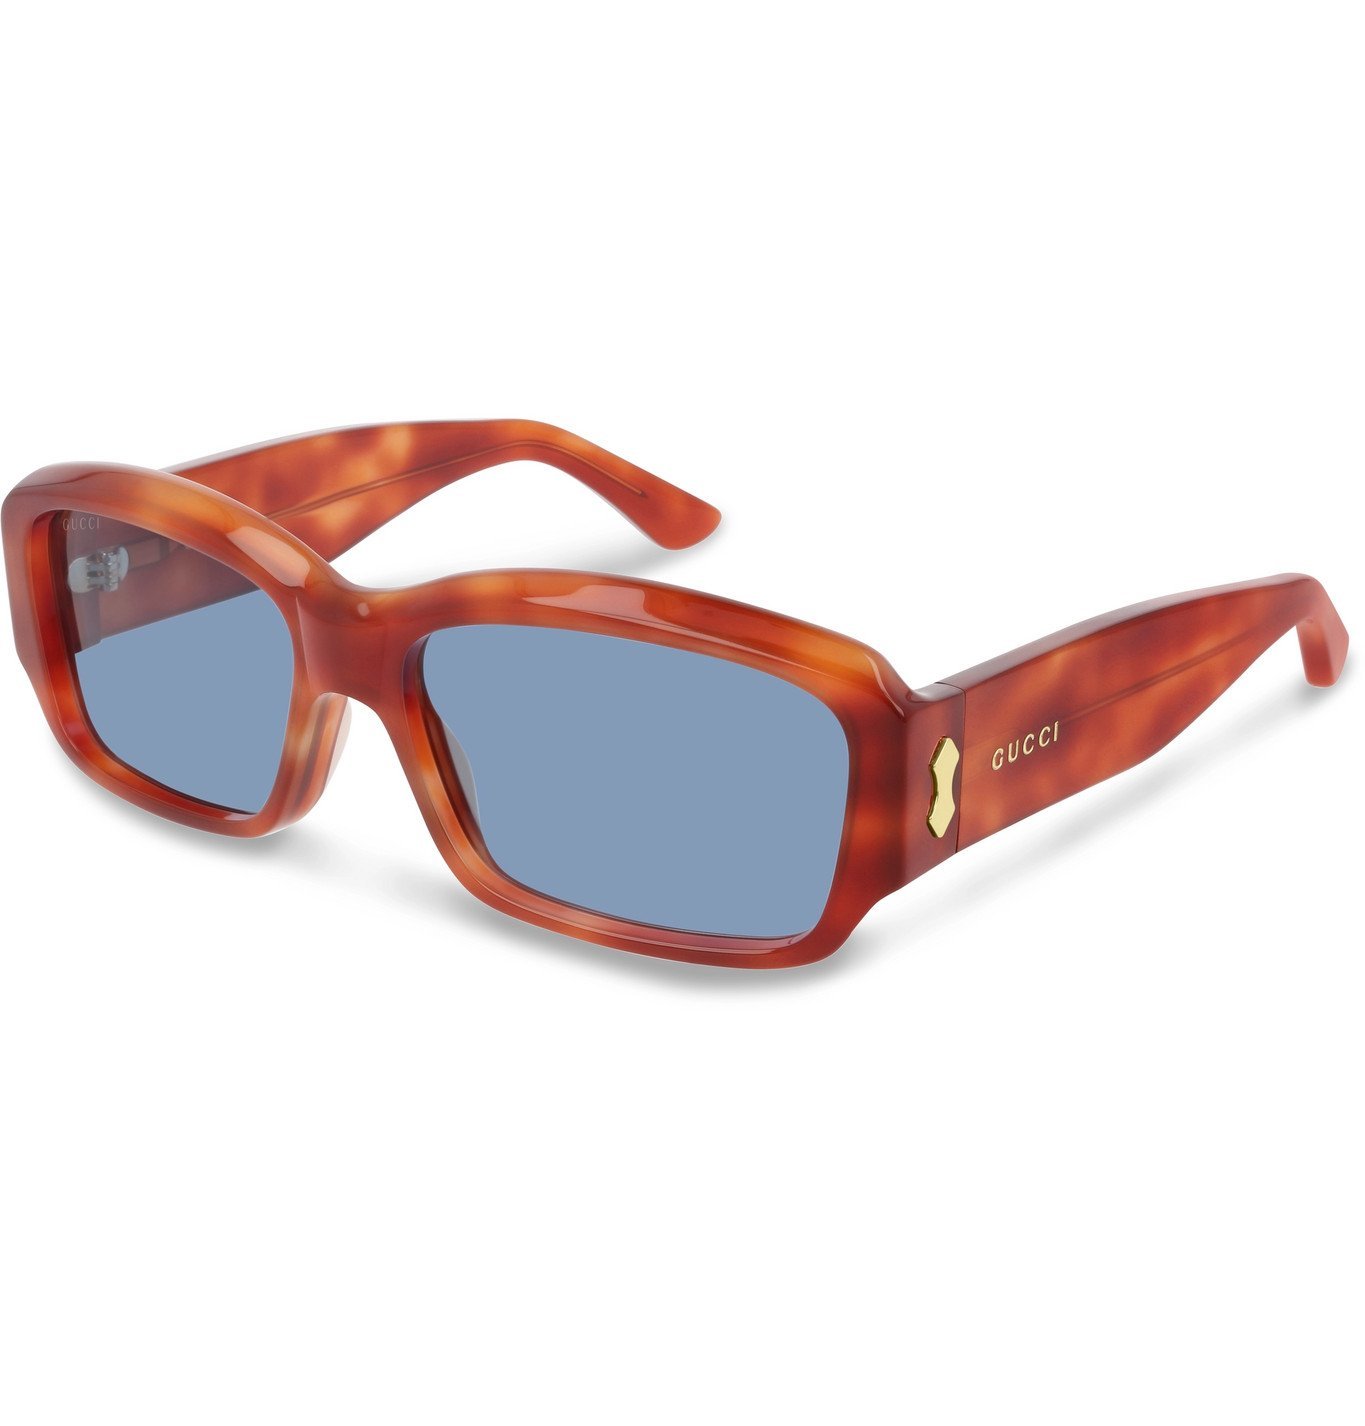 gucci rectangular acetate sunglasses